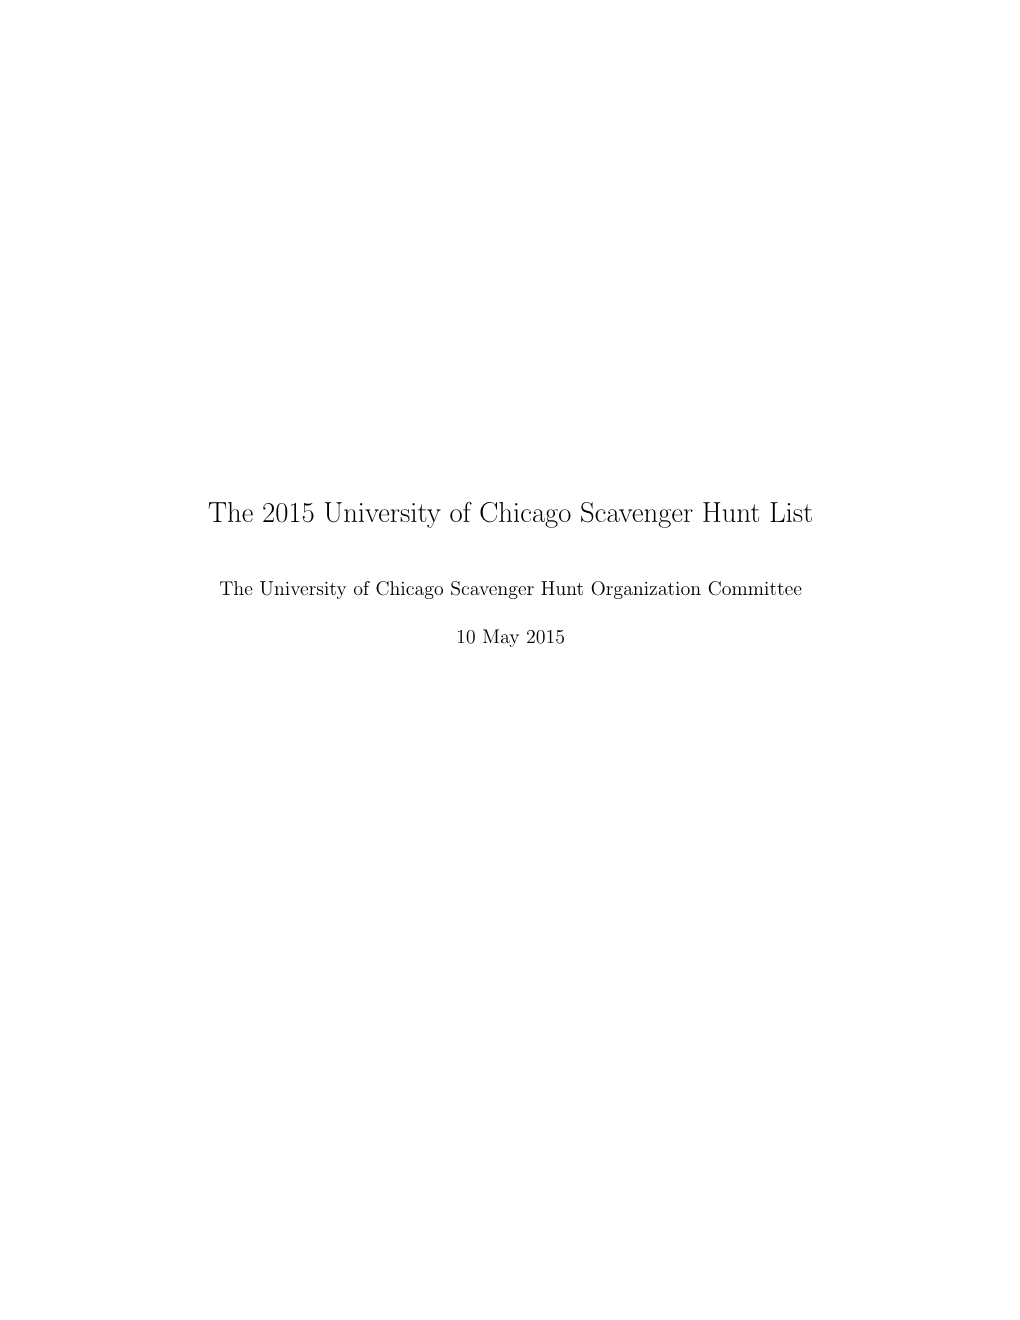 The 2015 University of Chicago Scavenger Hunt List